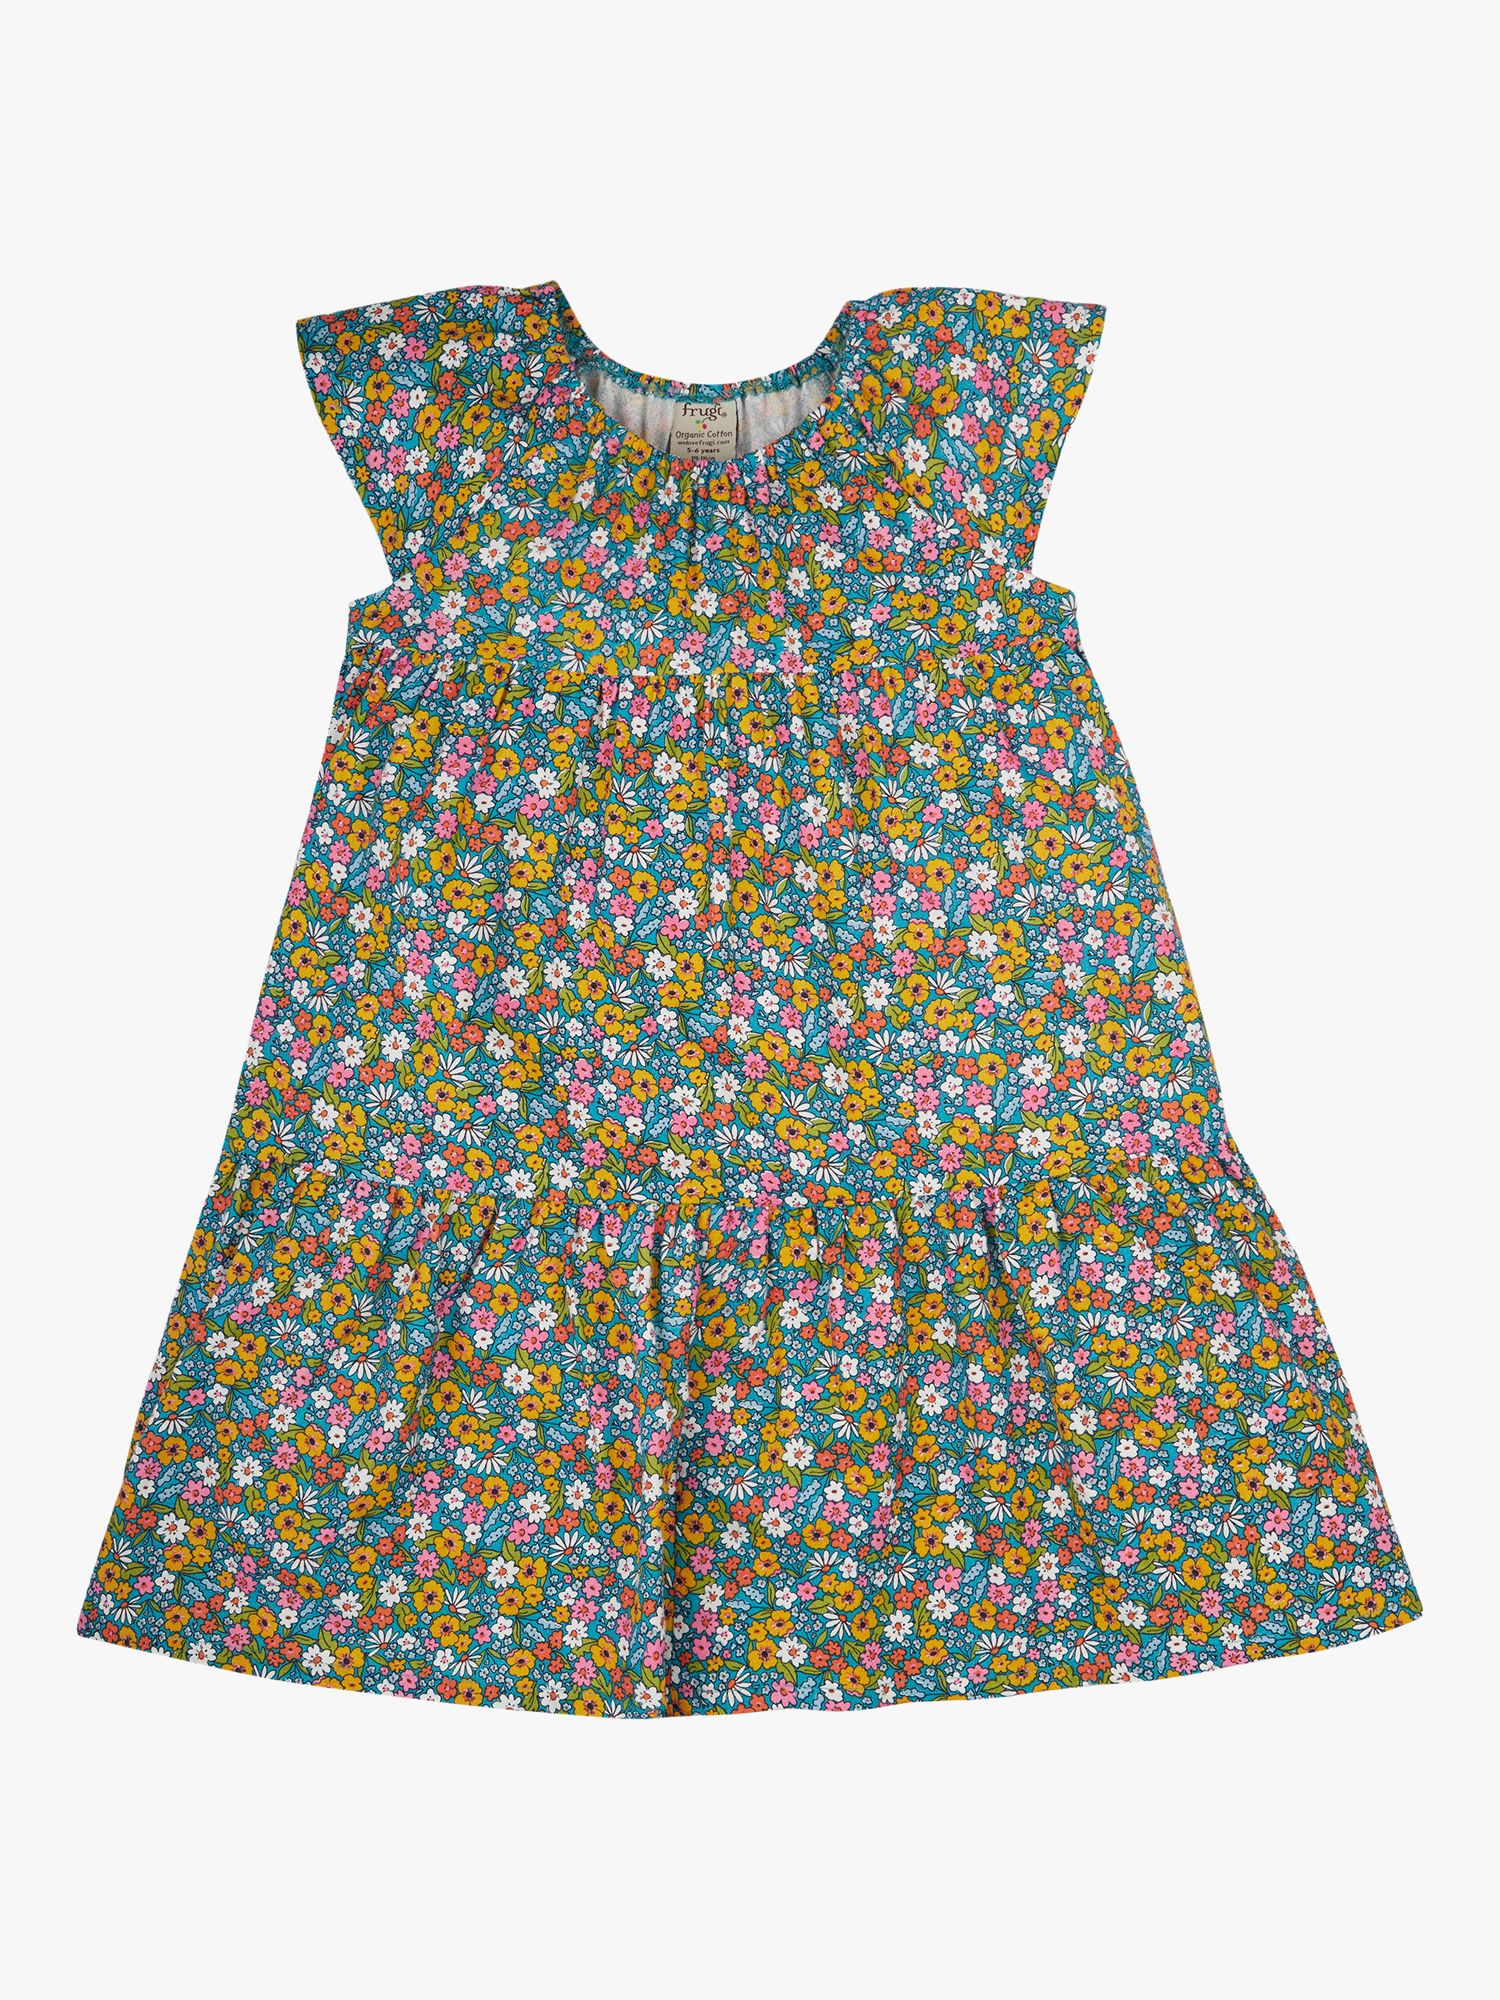 Frugi Kids' Violet Floral Print Dress, Multi, 18-24 months